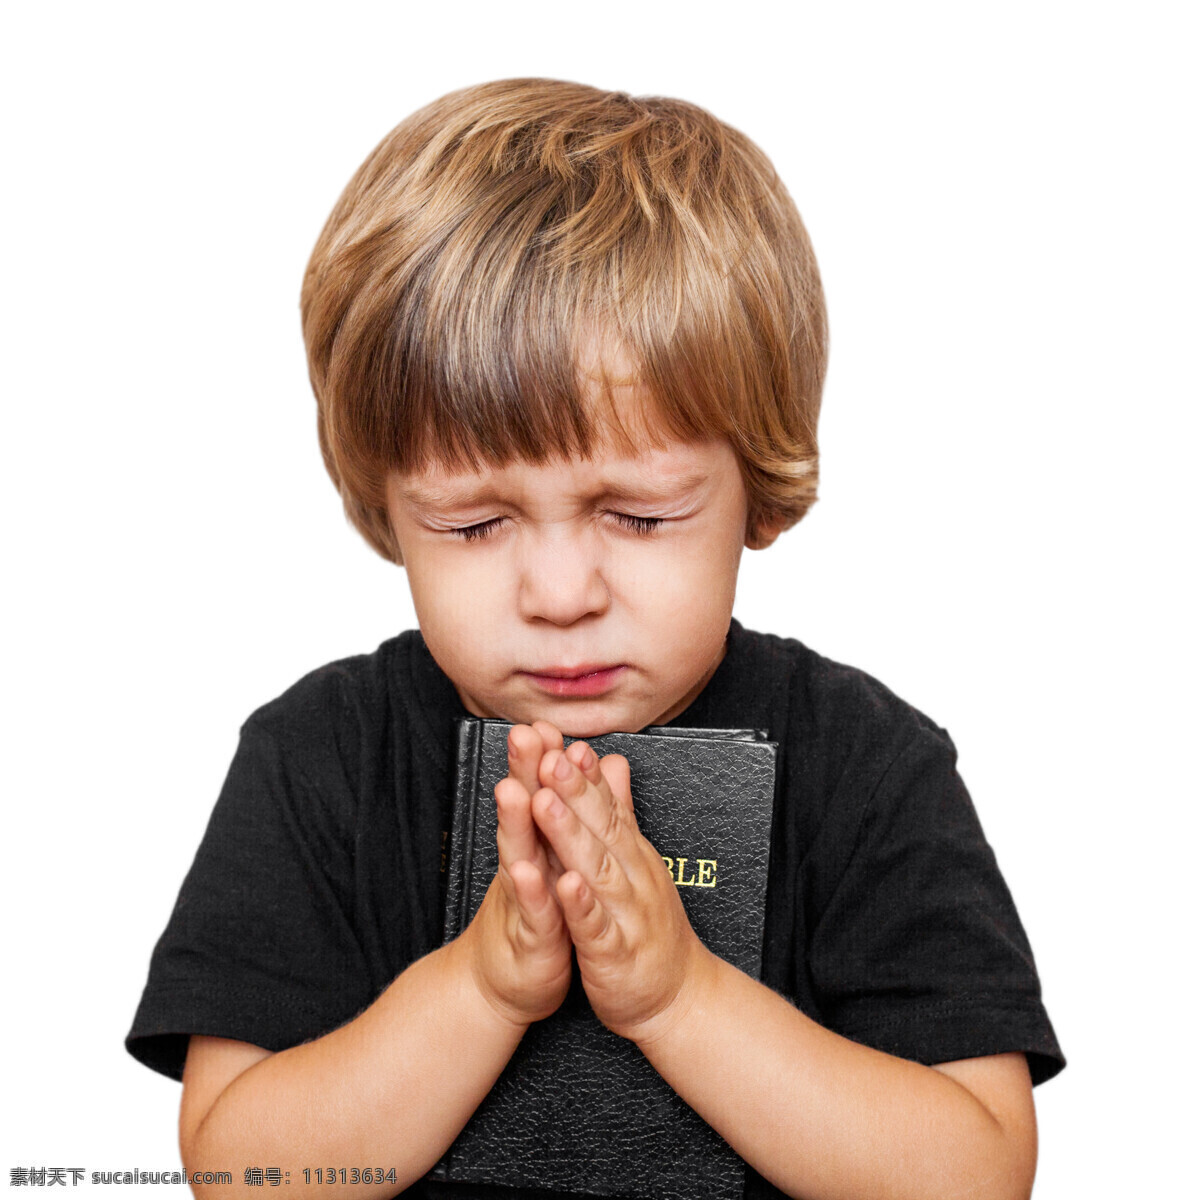 正在 祷告 男孩 儿童 圣经 其他人物 人物图片